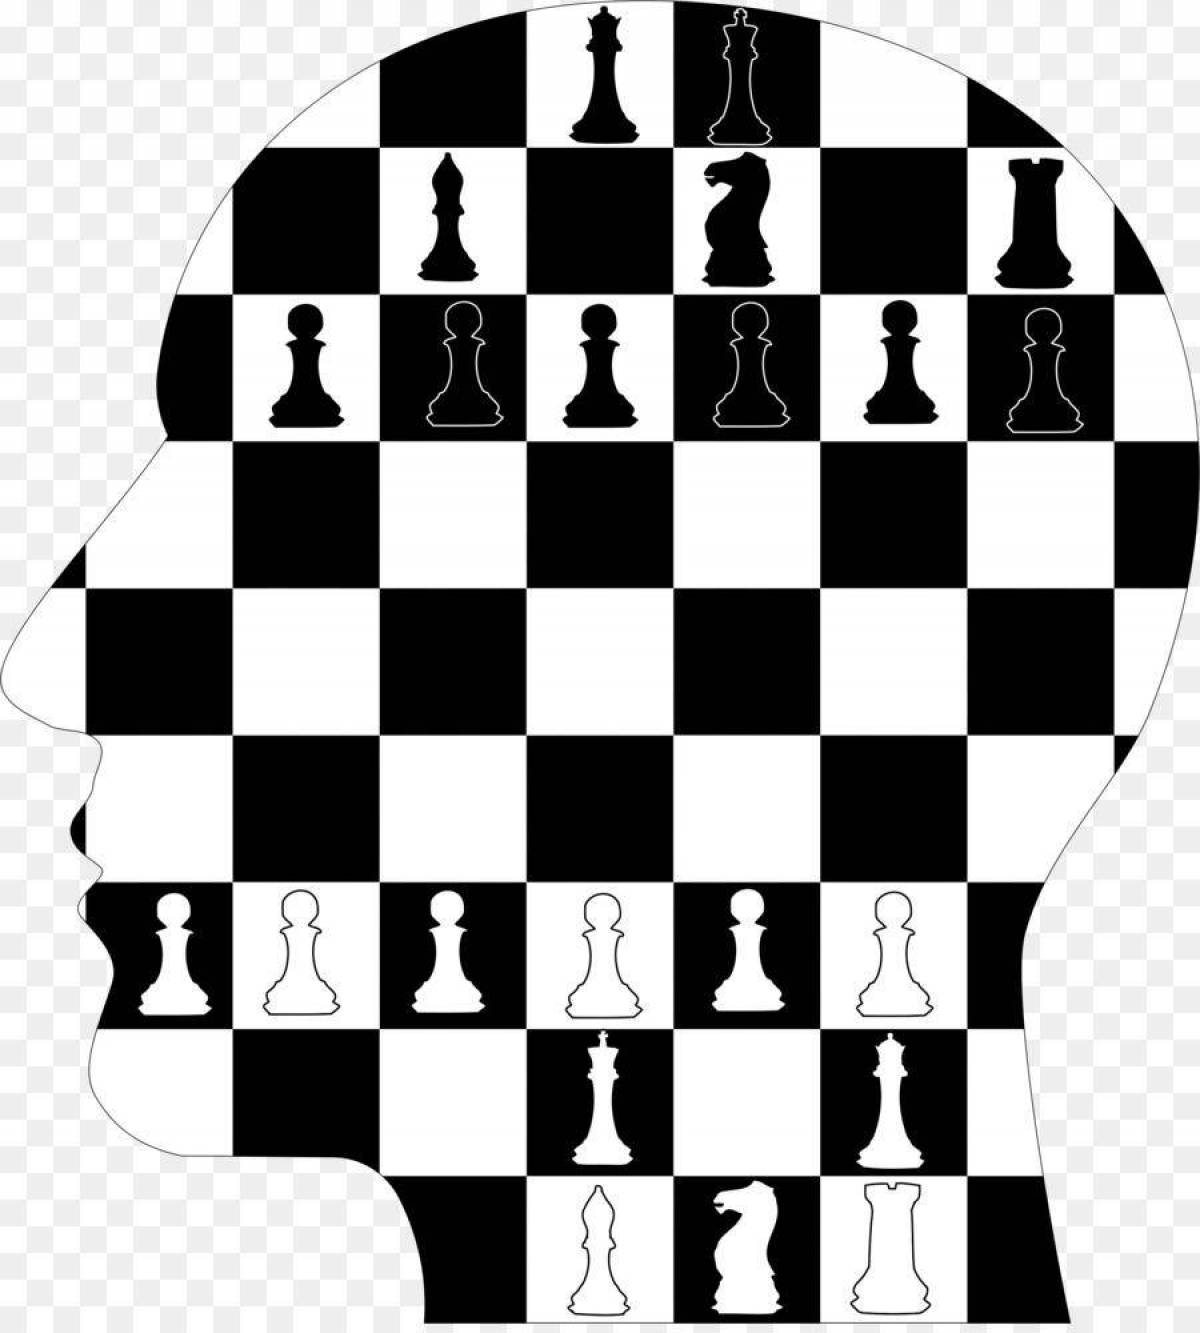 Children's chessboard #24